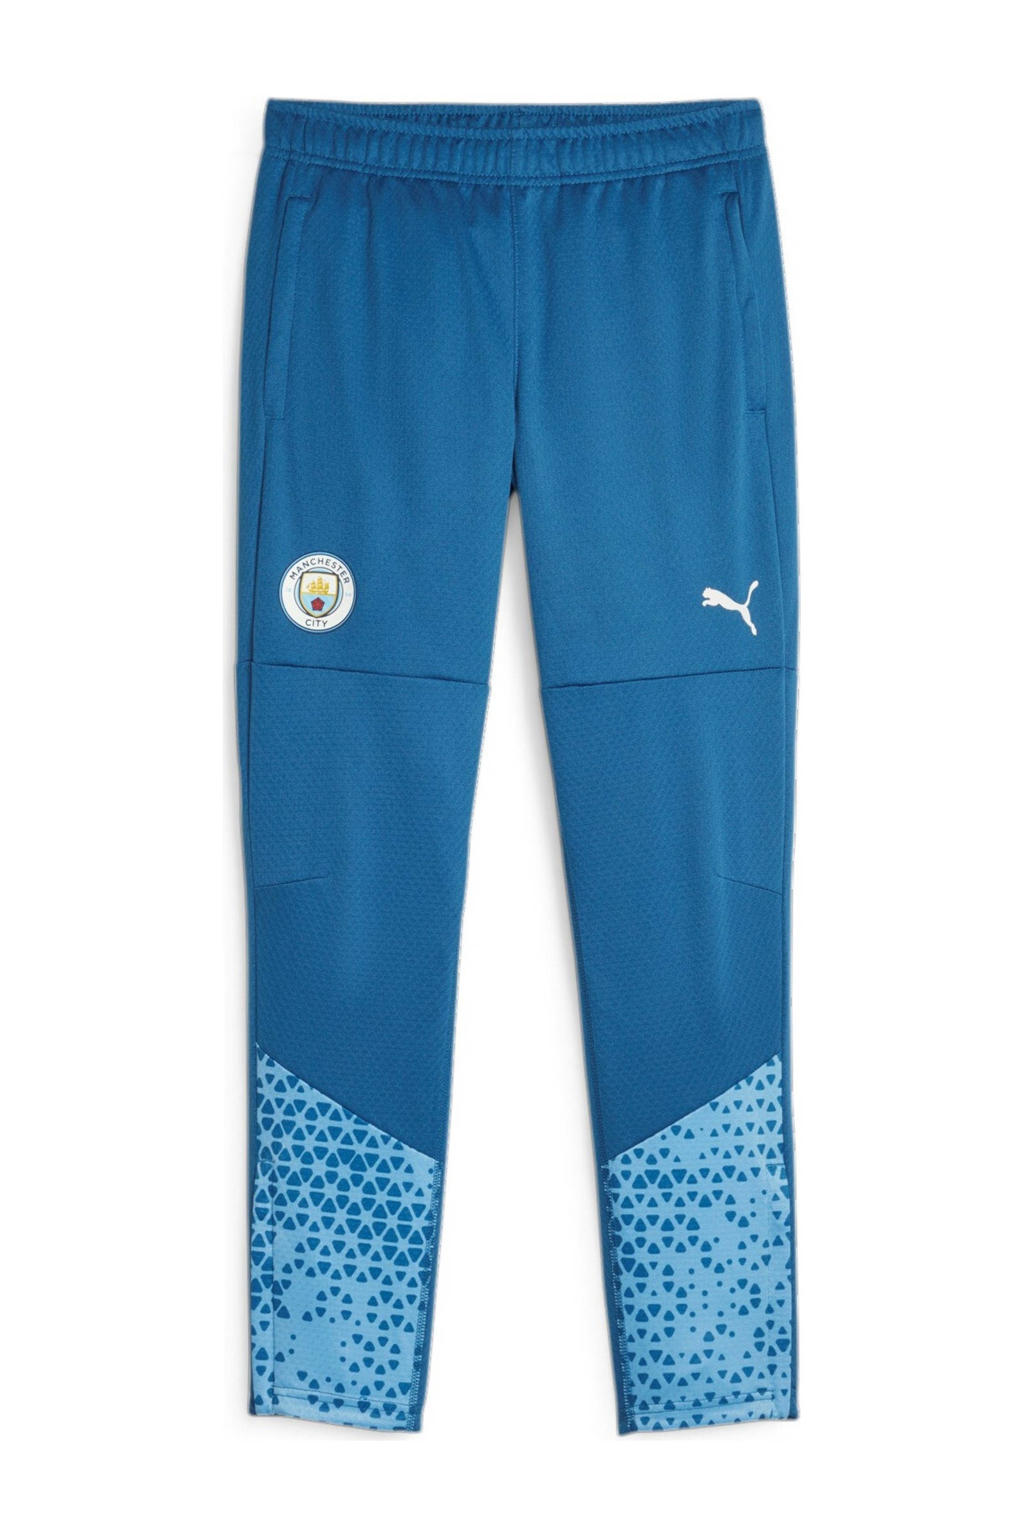 Blauwe jongens en meisjes Puma Manchester City voetbalbroek training van polyester met regular fit, elastische tailleband met koord en logo dessin